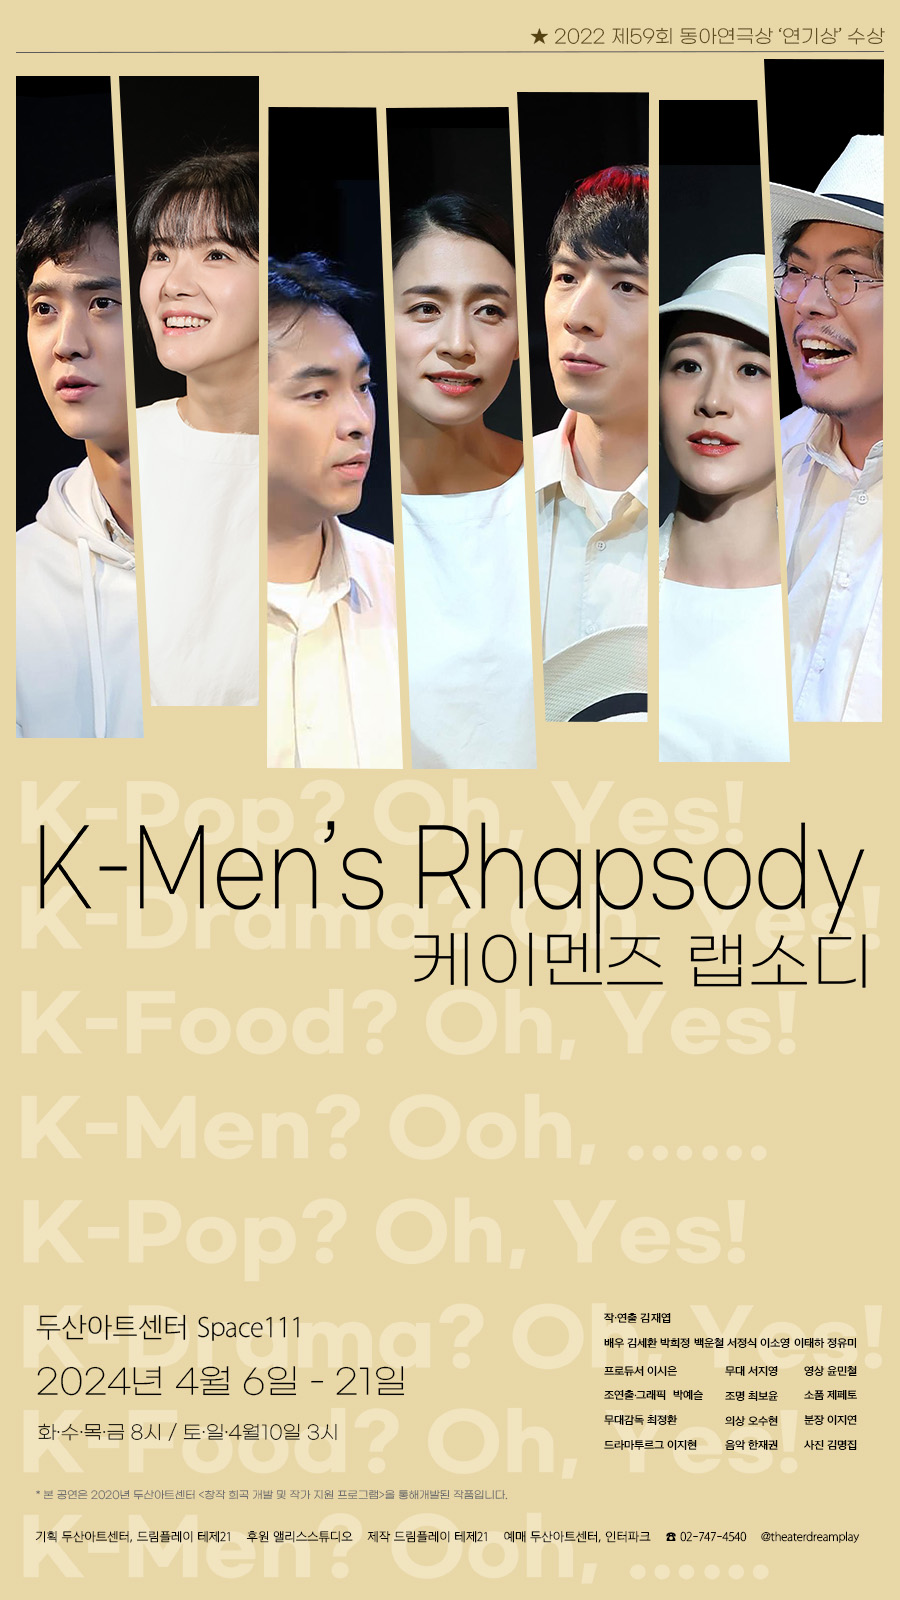 K-Men’s Rhapsody